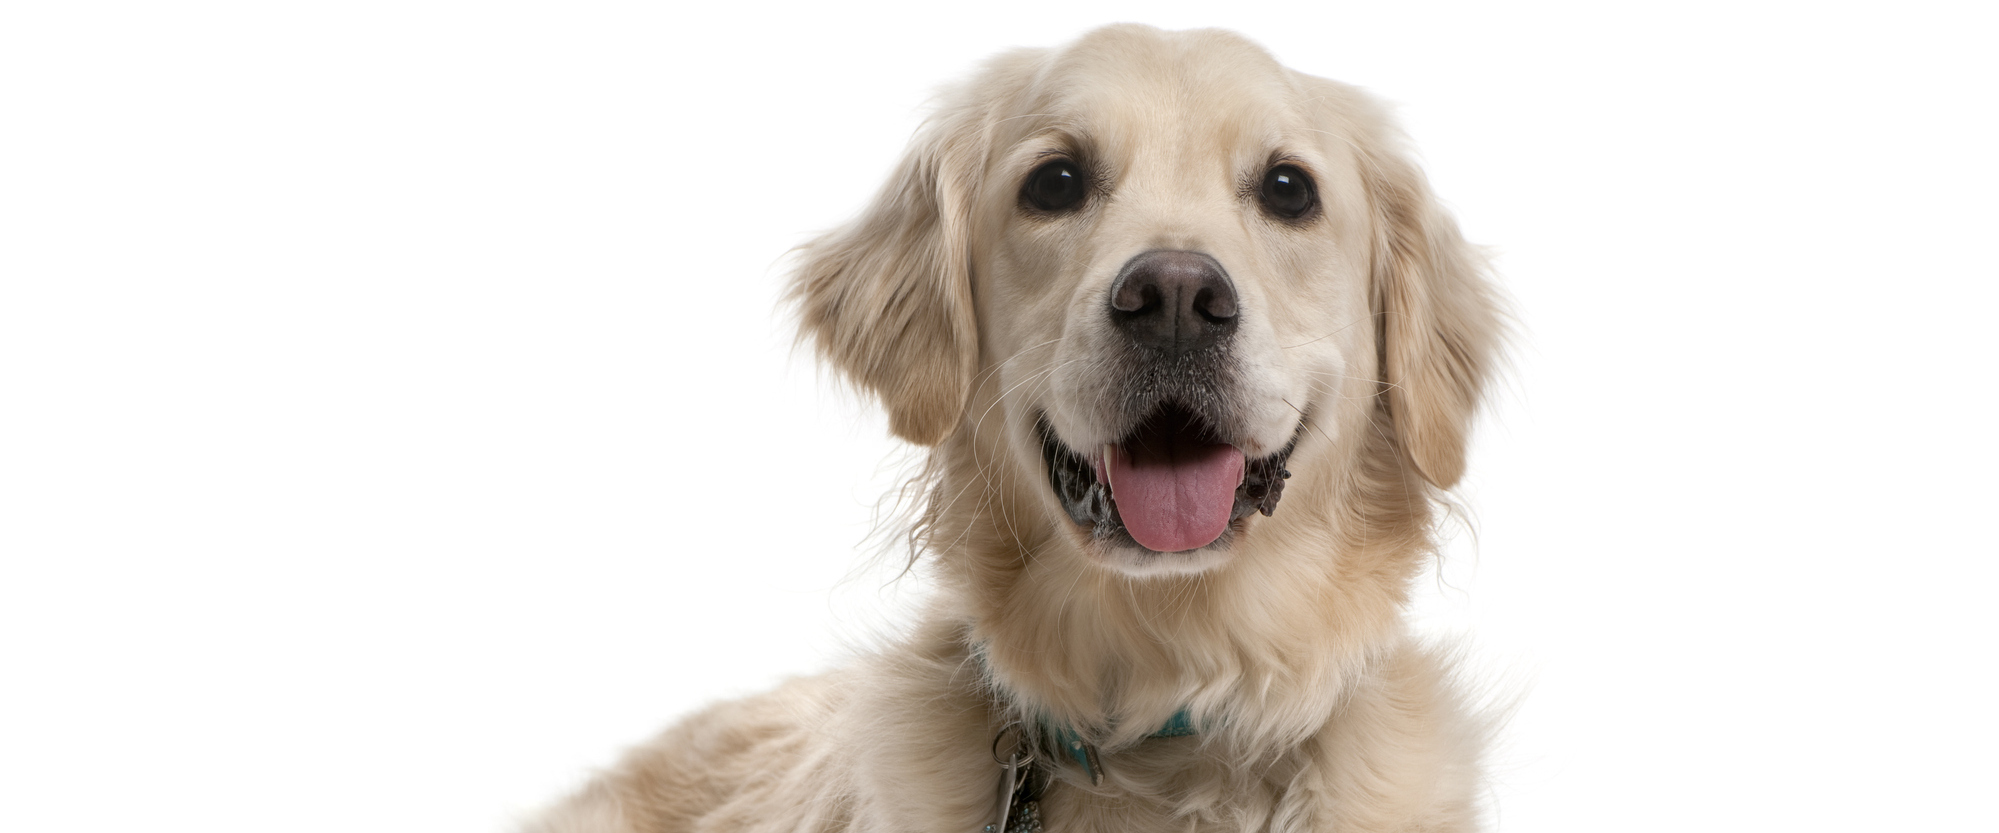 Пироплазмоз (бабезиоз) собак: симптомы, лечение, профилактика